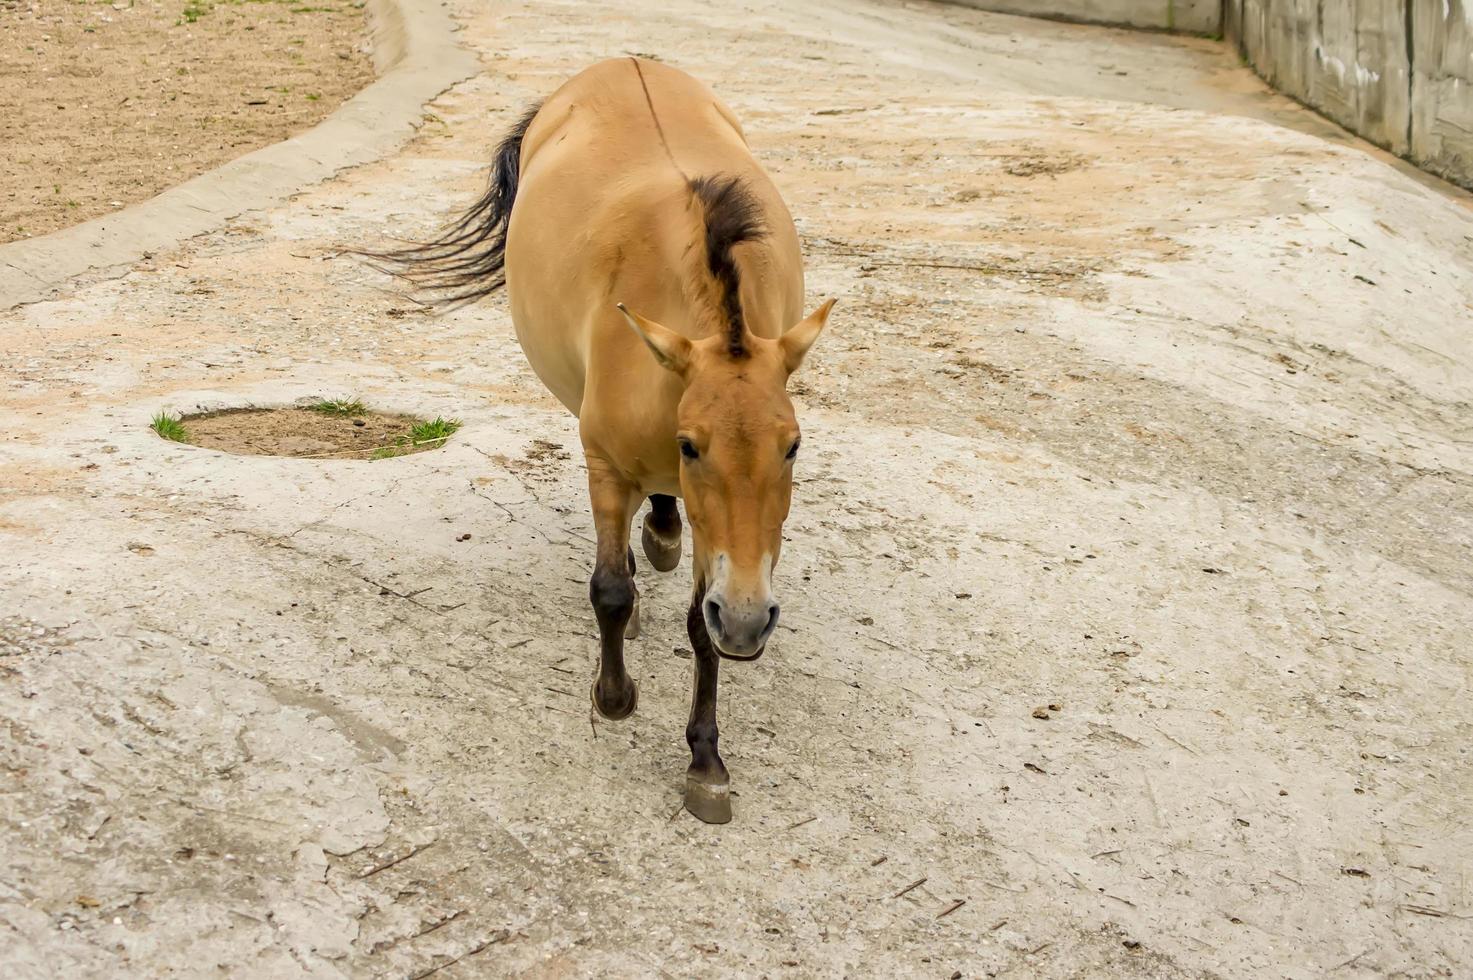 cavallo przewalski allo zoo. cavallo asiatico selvaggio equus ferus przewalskii foto